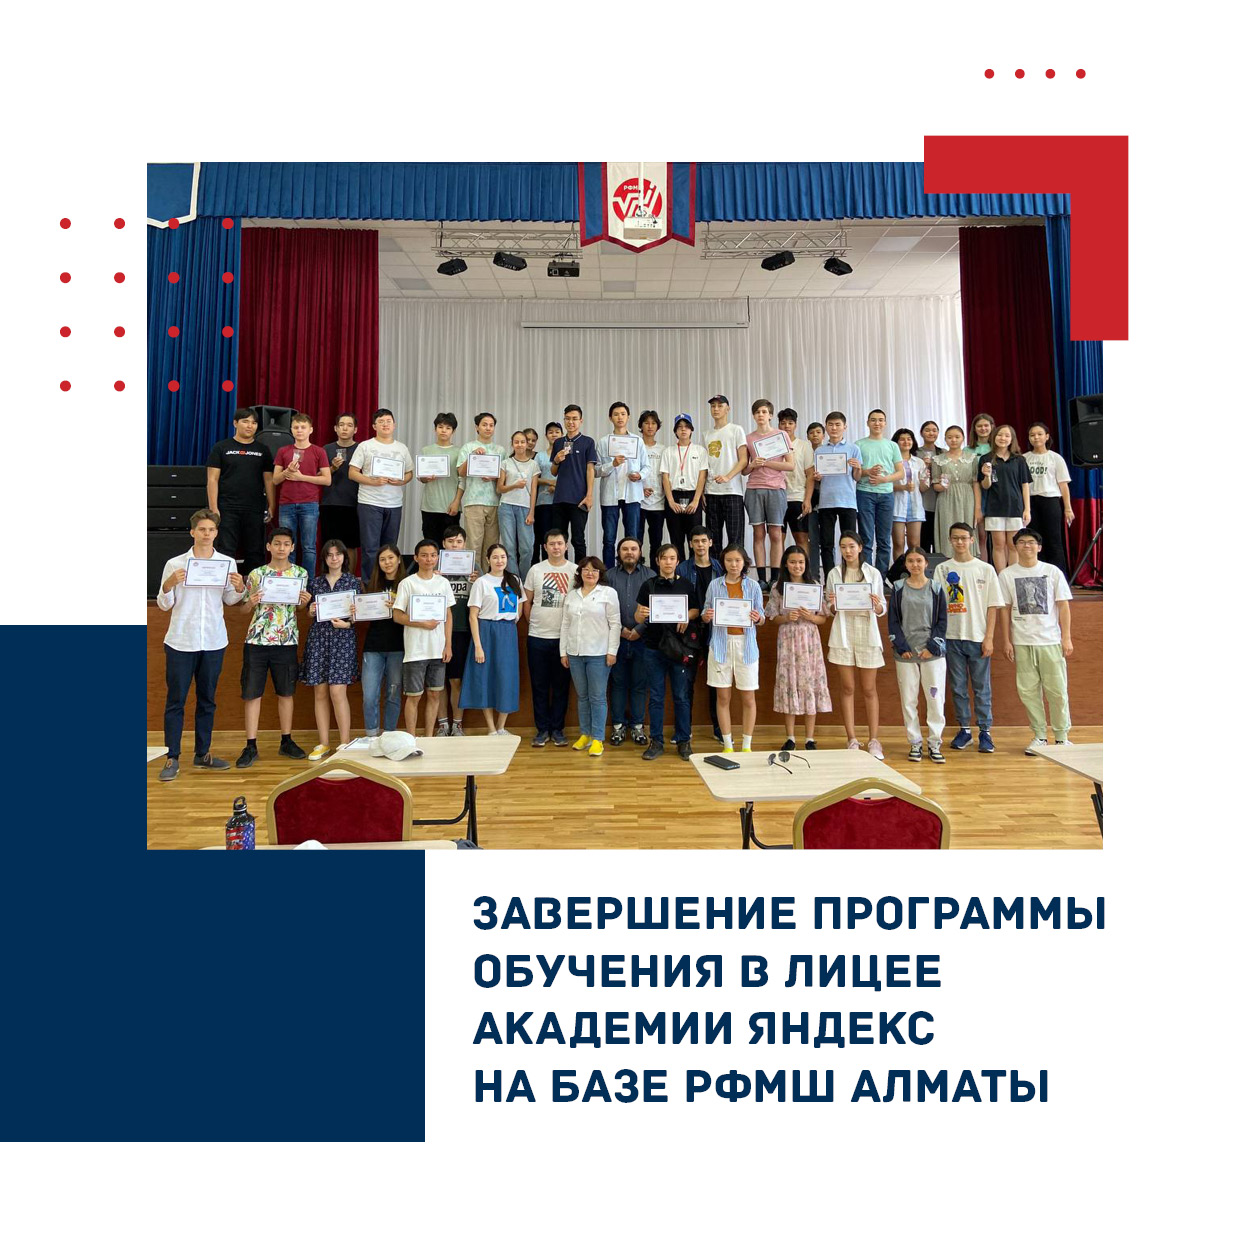 Завершение программы обучения в Лицее Академии Яндекс на базе РФМШ Алматы